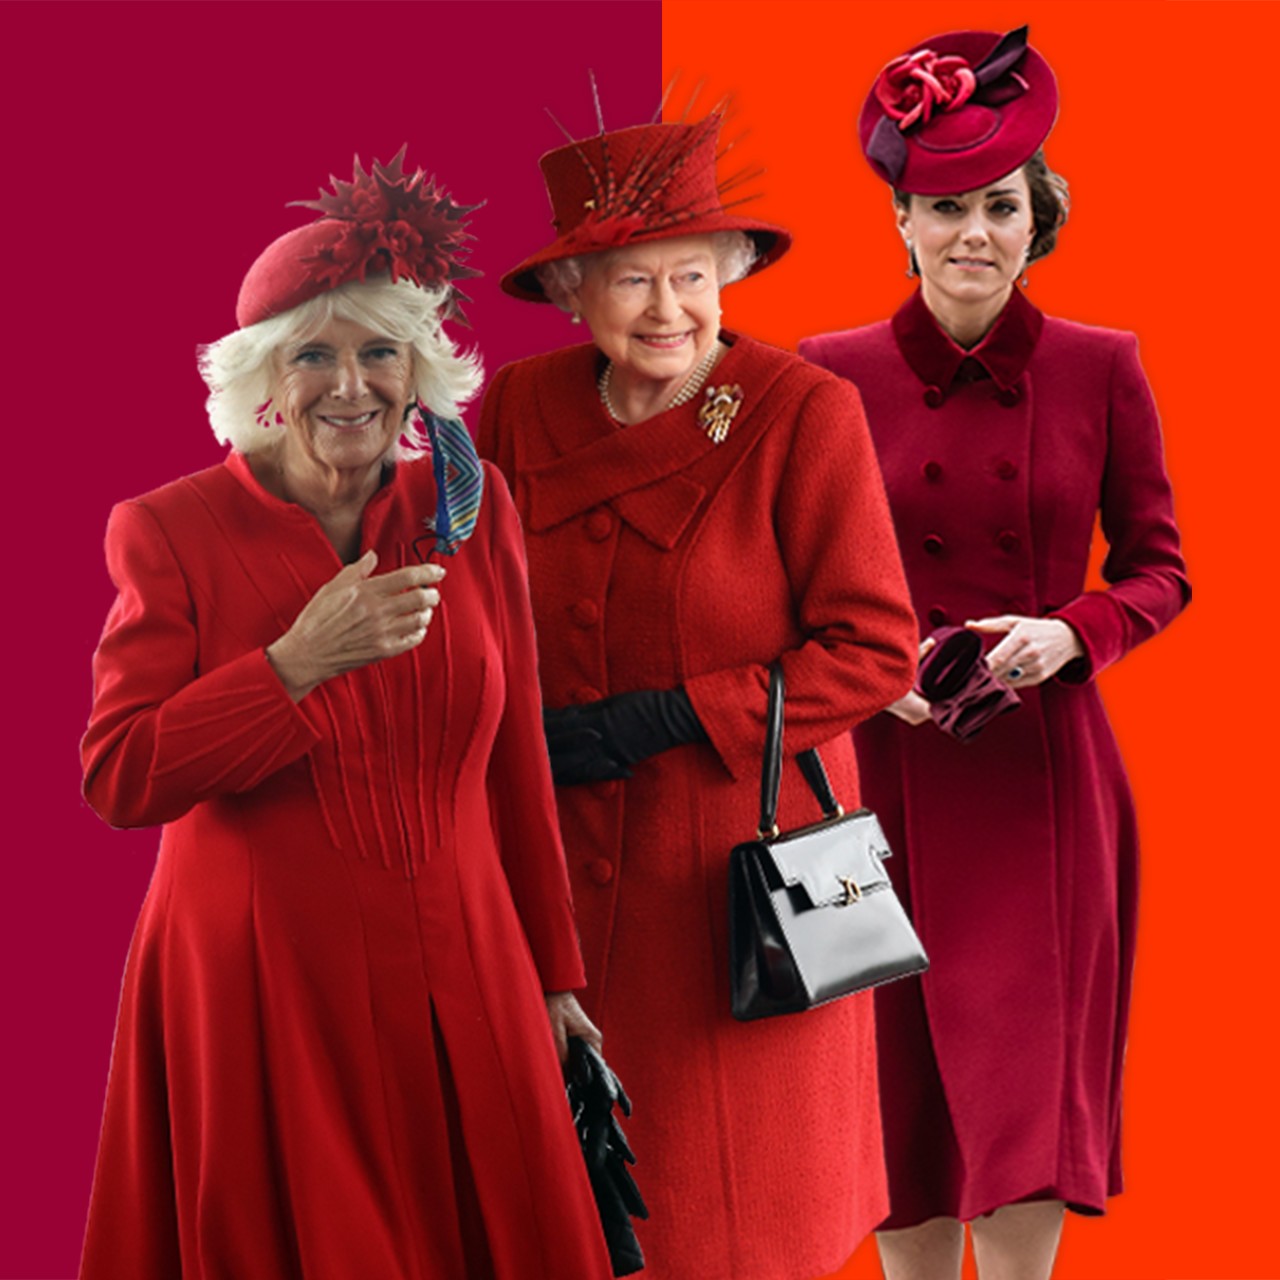 Rainha Elizabeth 2ª, Camilla (duquesa da Cornualha) e Kate (duquesa de Cambridge), todas vestindo roupas vermelhas (Foto: BBC News)